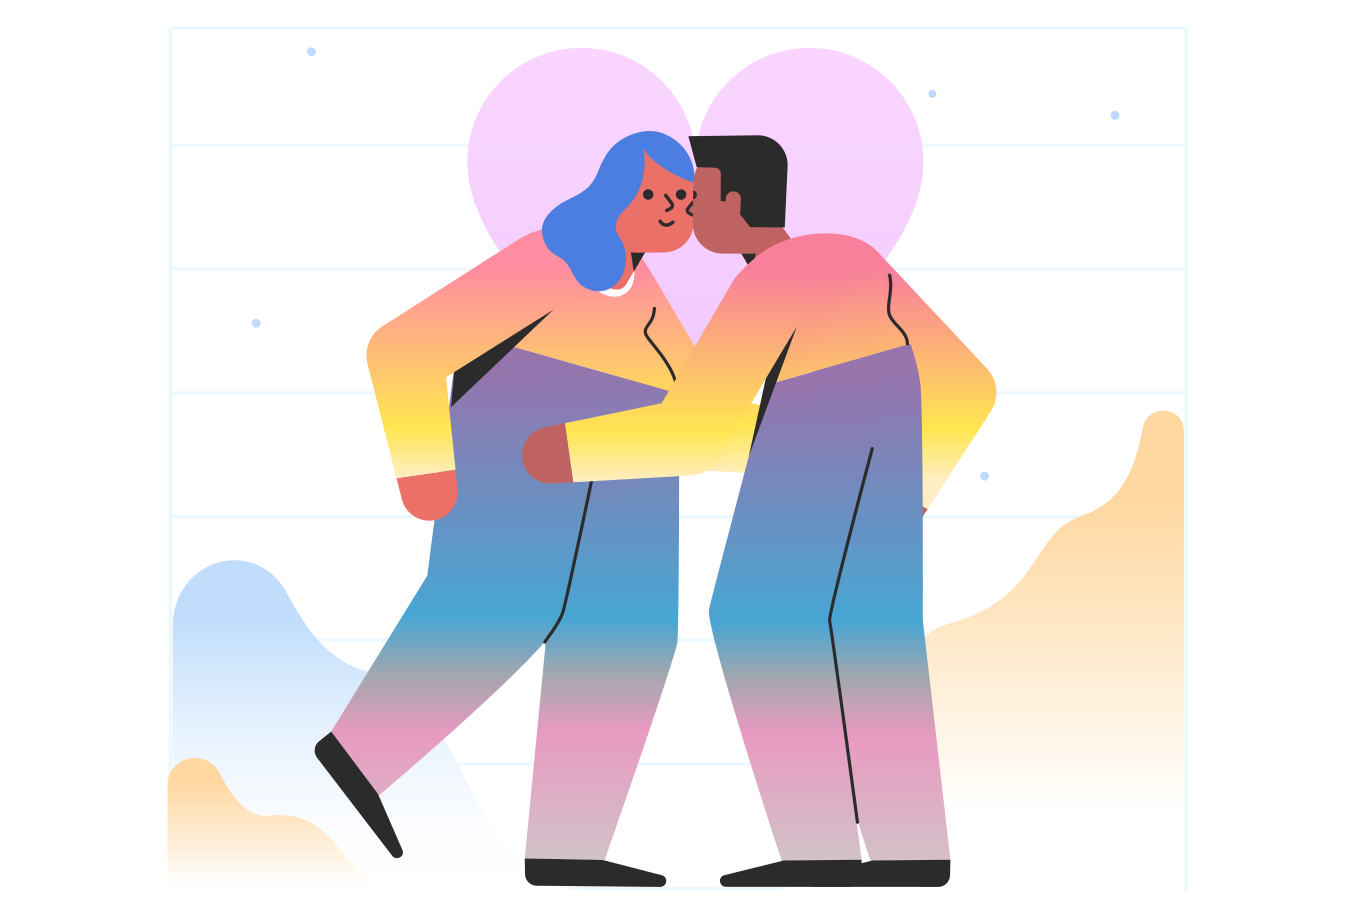 Kiss Illustration in PNG, SVG